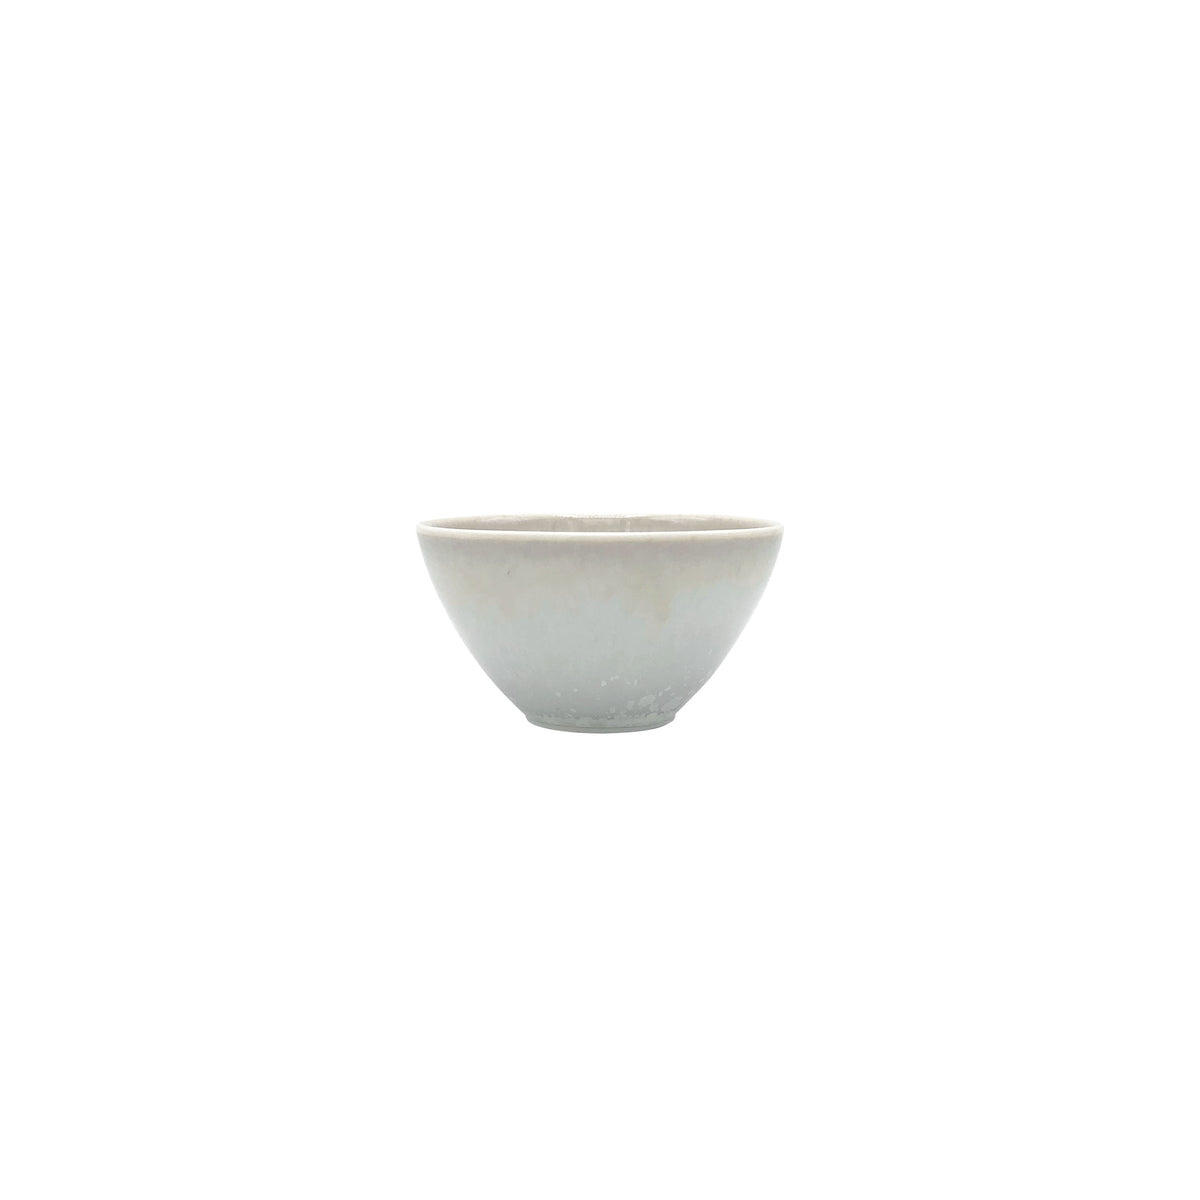 SONG Orage - Sake bowl